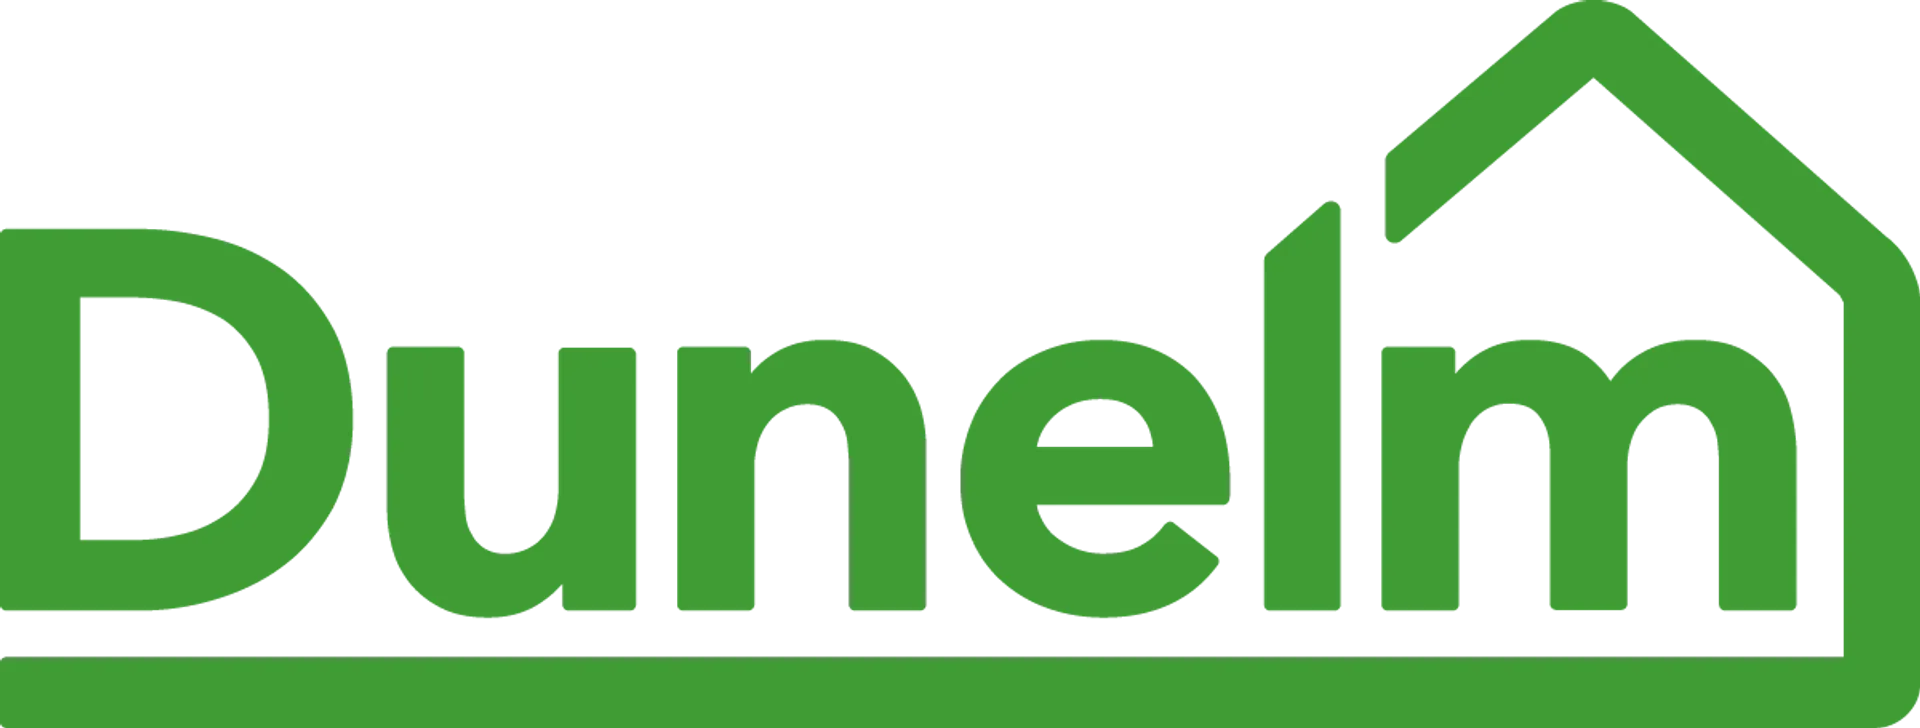 DUNELM logo